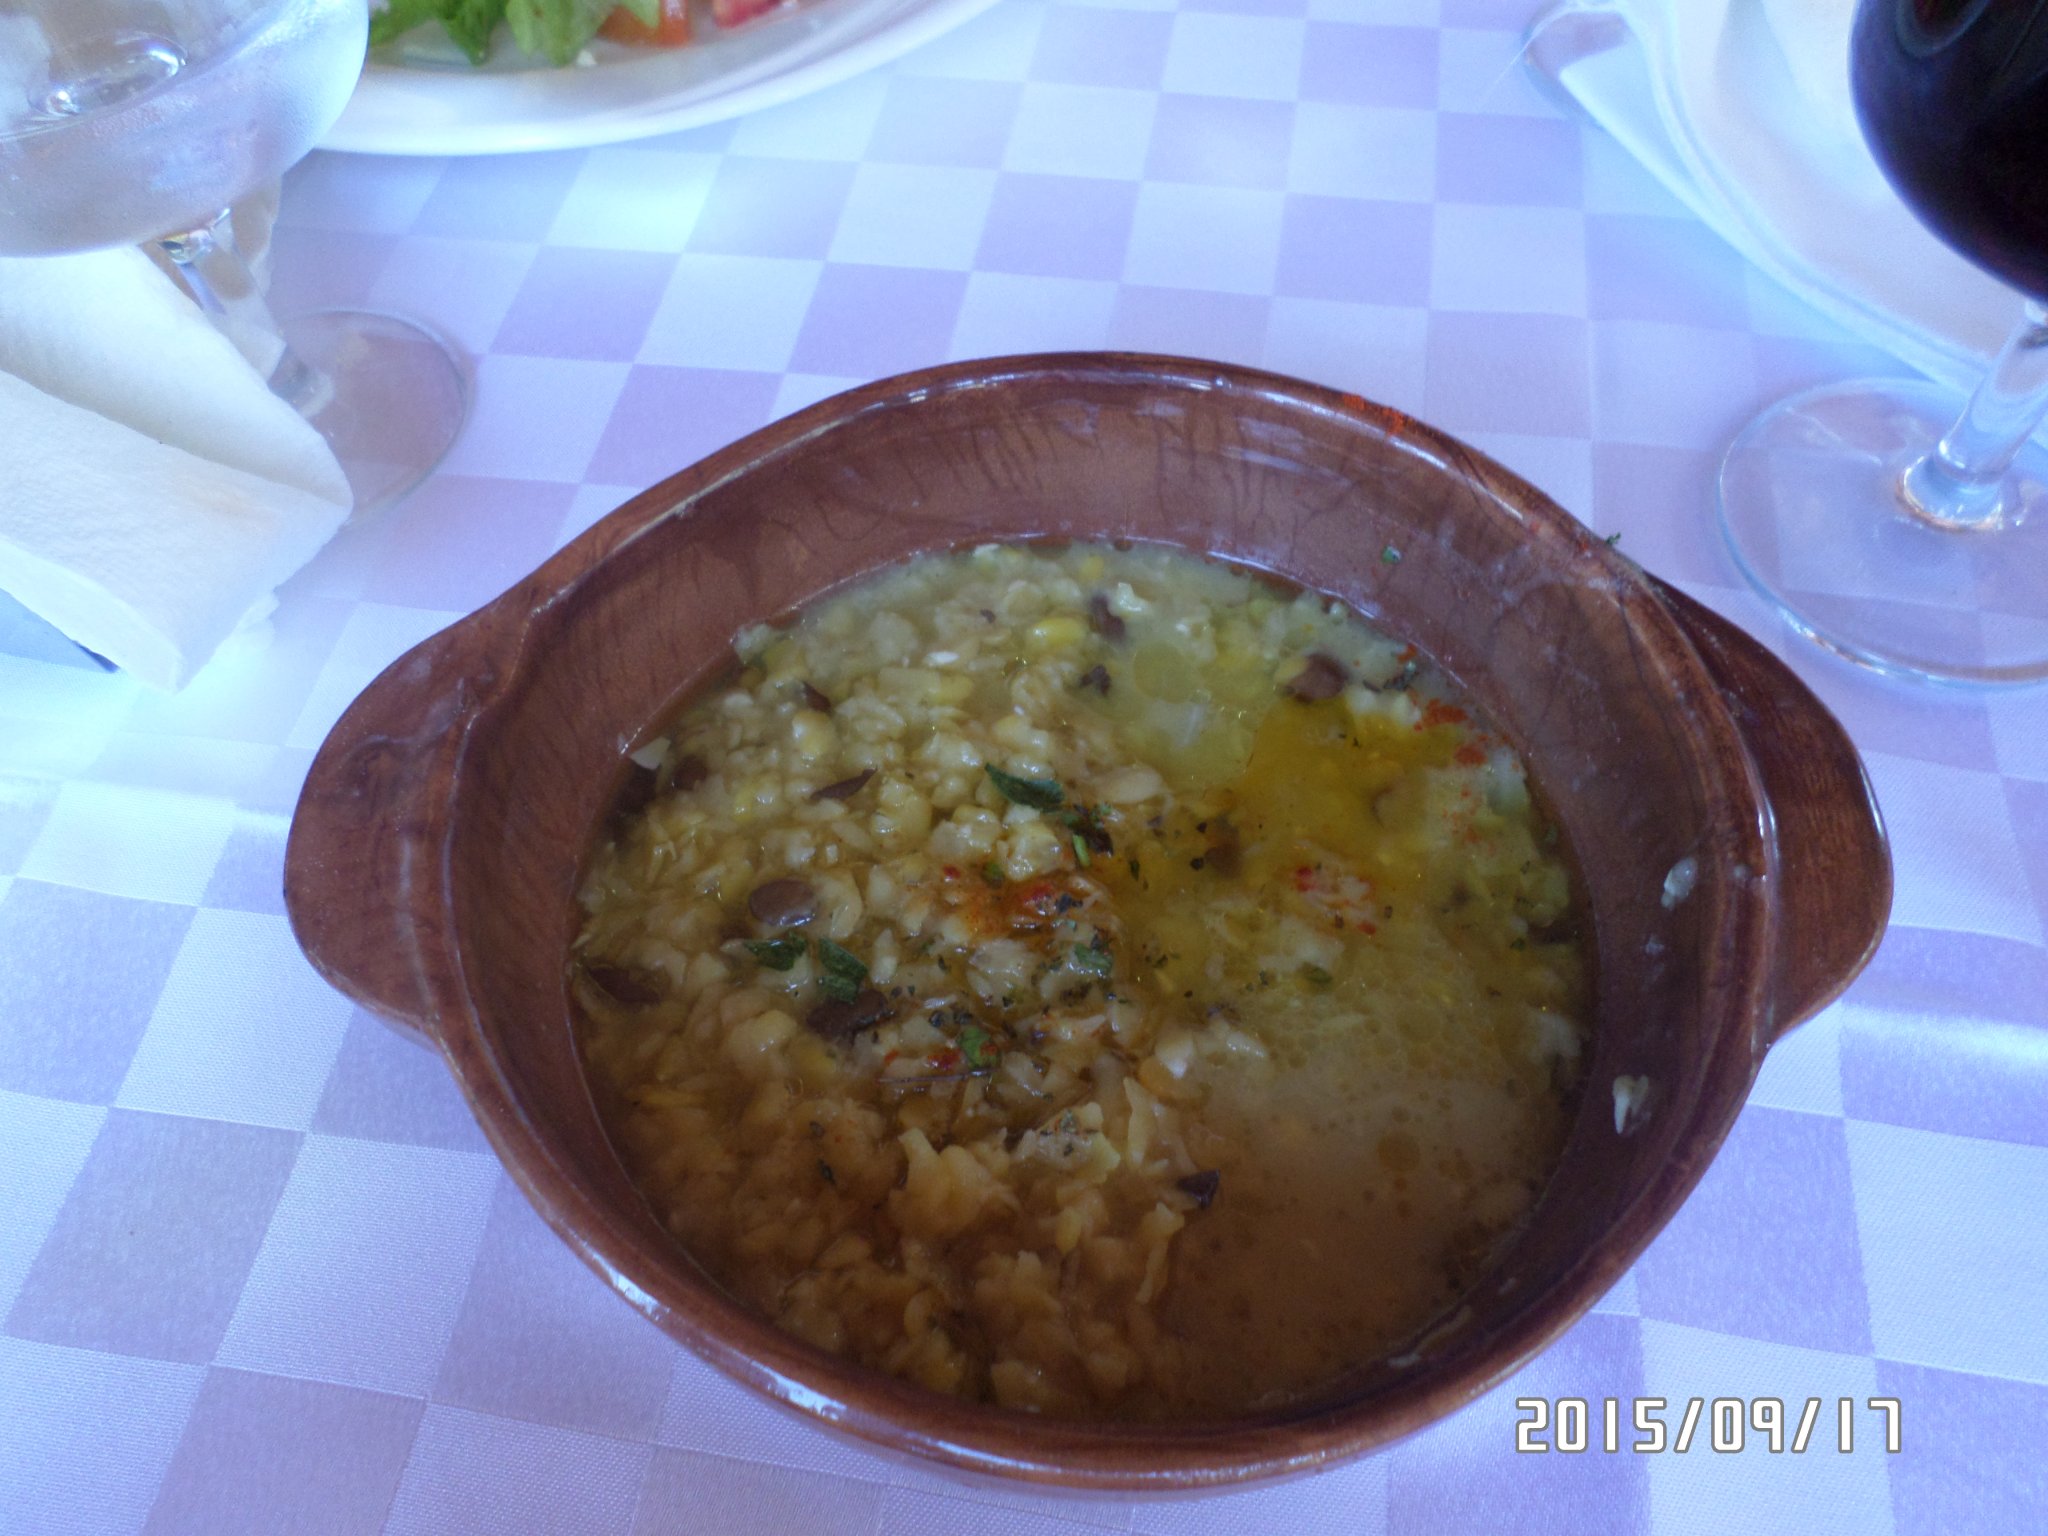 A csicseri borsóhoz hasonló növényből főznek levest Forrás: saját kép